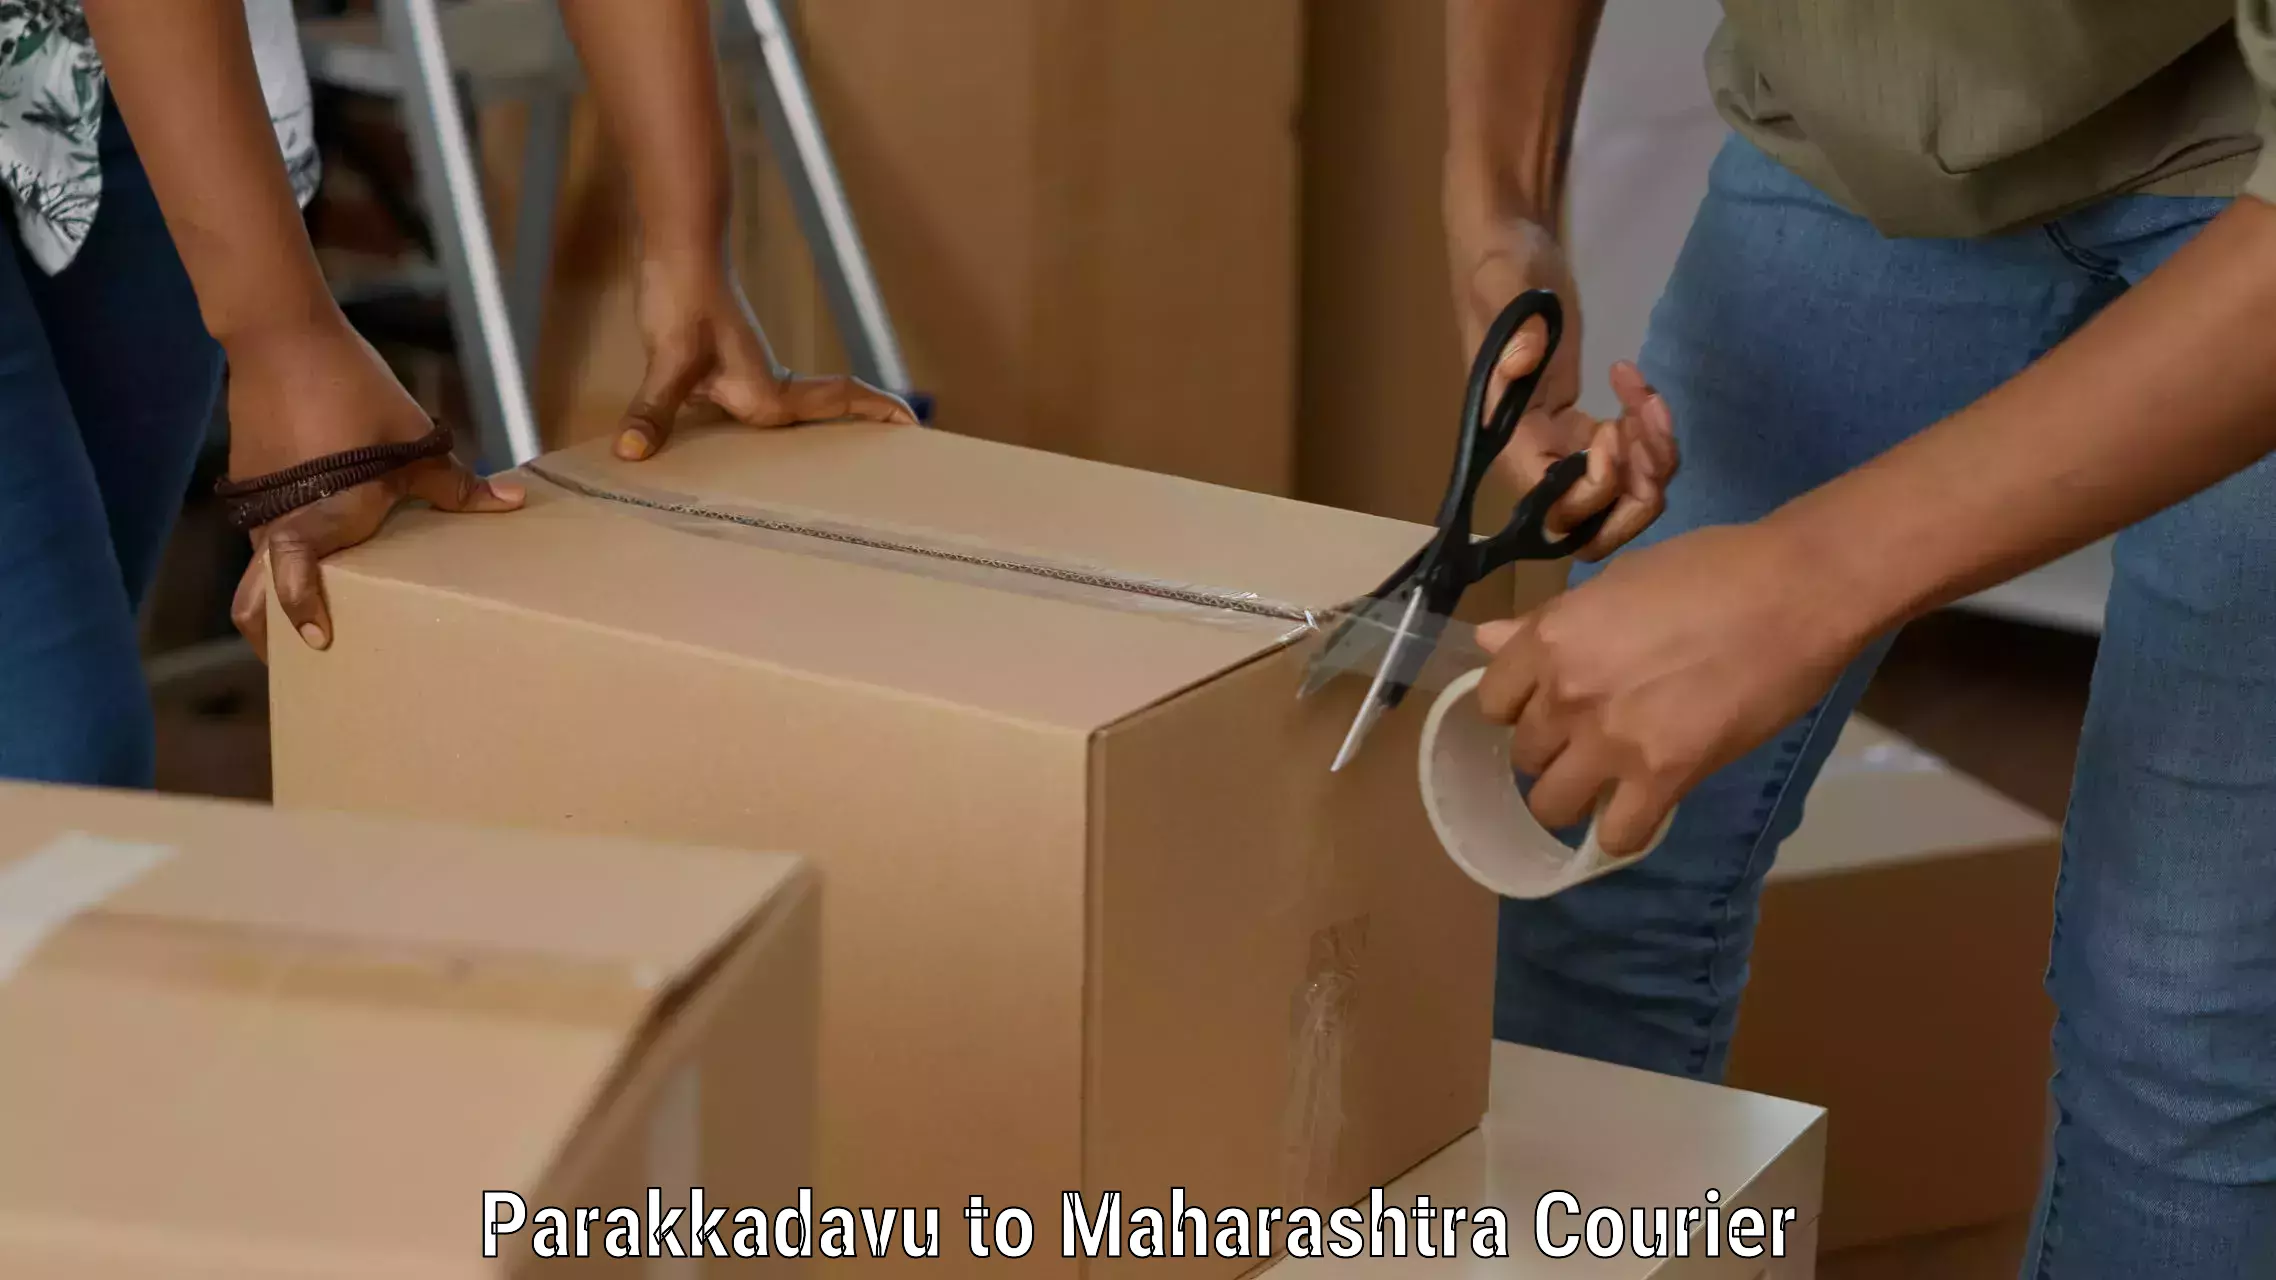 Advanced tracking systems Parakkadavu to Maharashtra